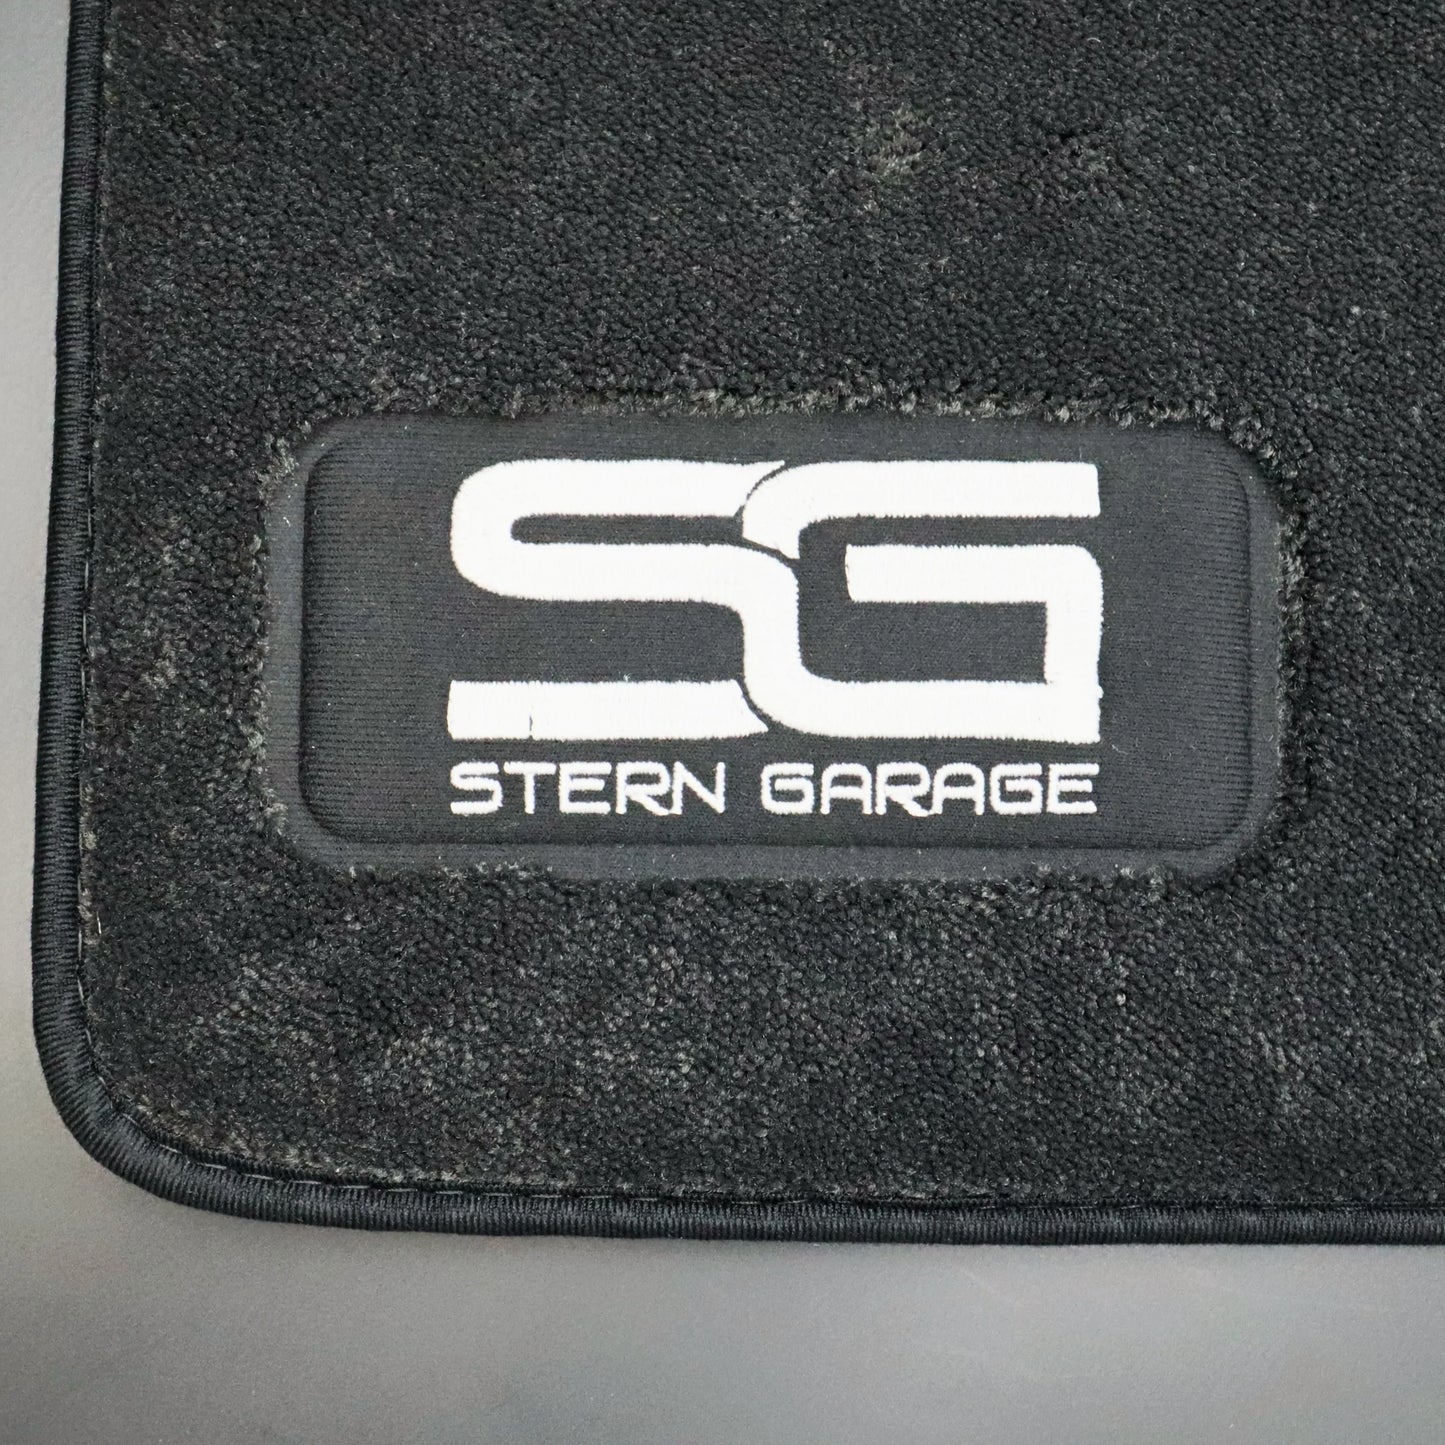 W201 Stern Garage Fußmatten-Satz Stern Garage